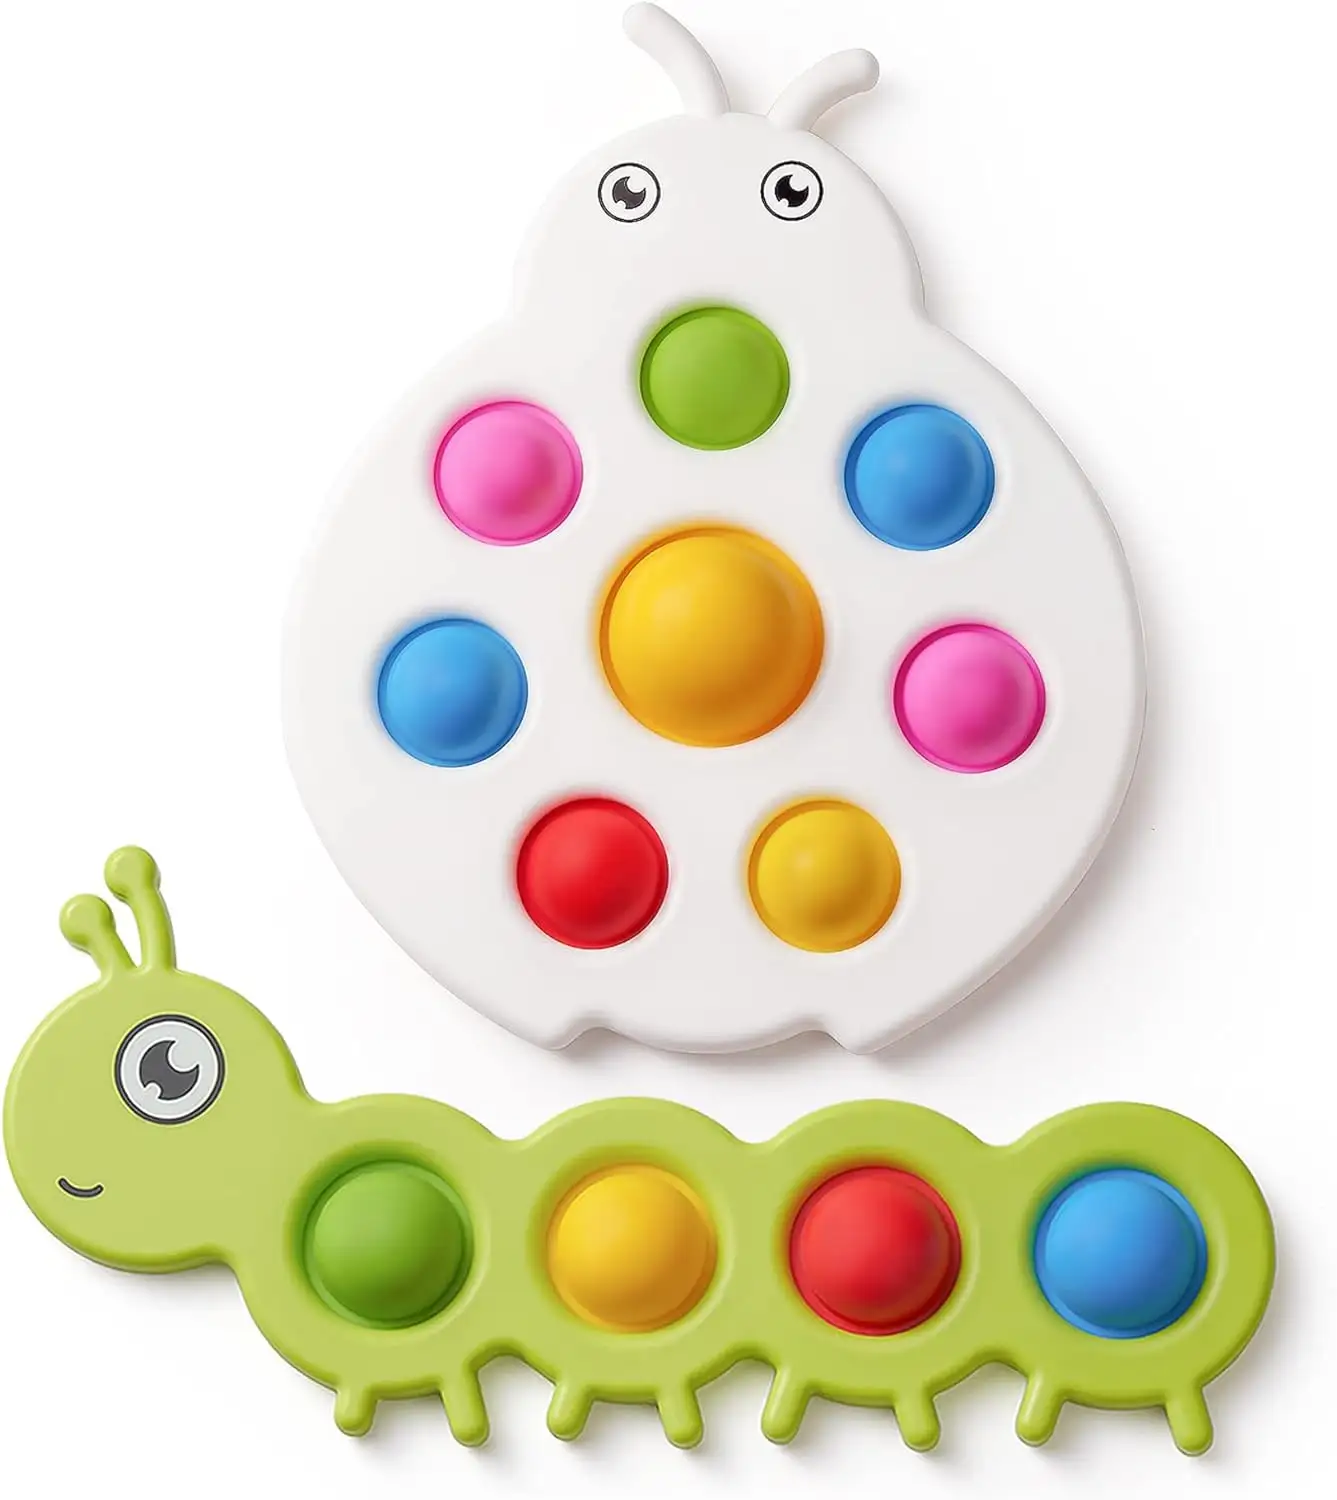 赤ちゃんの早期教育おもちゃフィンガーバブルフィジェットポッパー感覚おもちゃギフト6ヶ月赤ちゃん幼児と子供自閉症ストレス解消